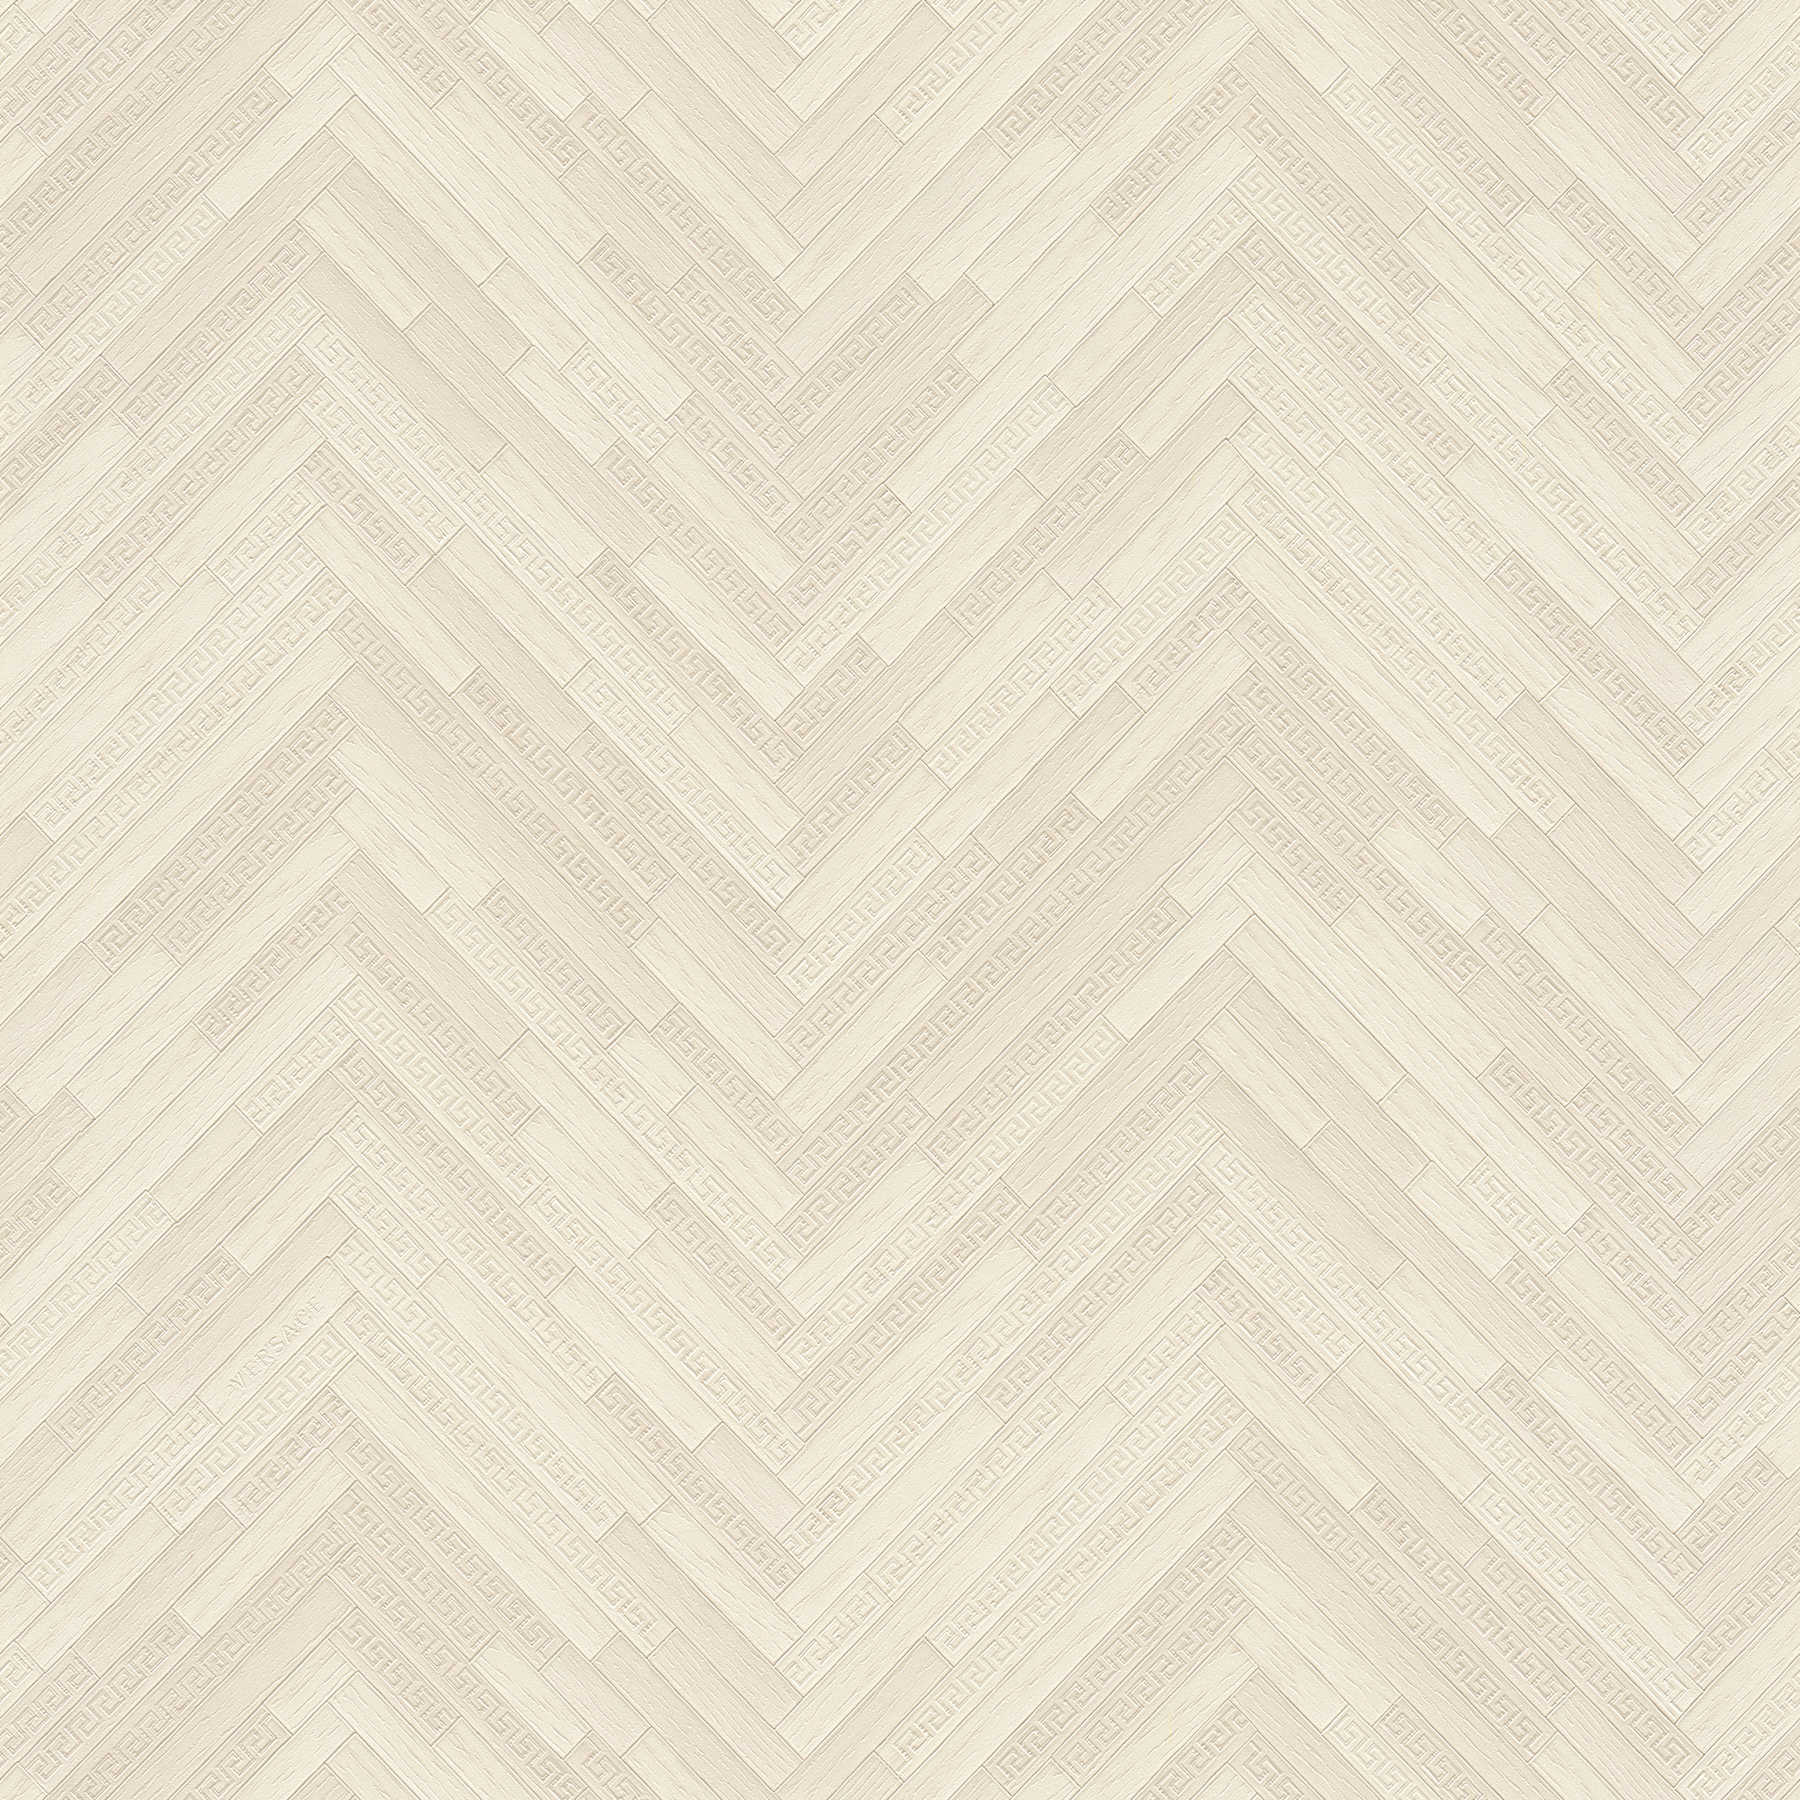 VERSACE Home Papier peint aspect bois élégant - crème, beige
